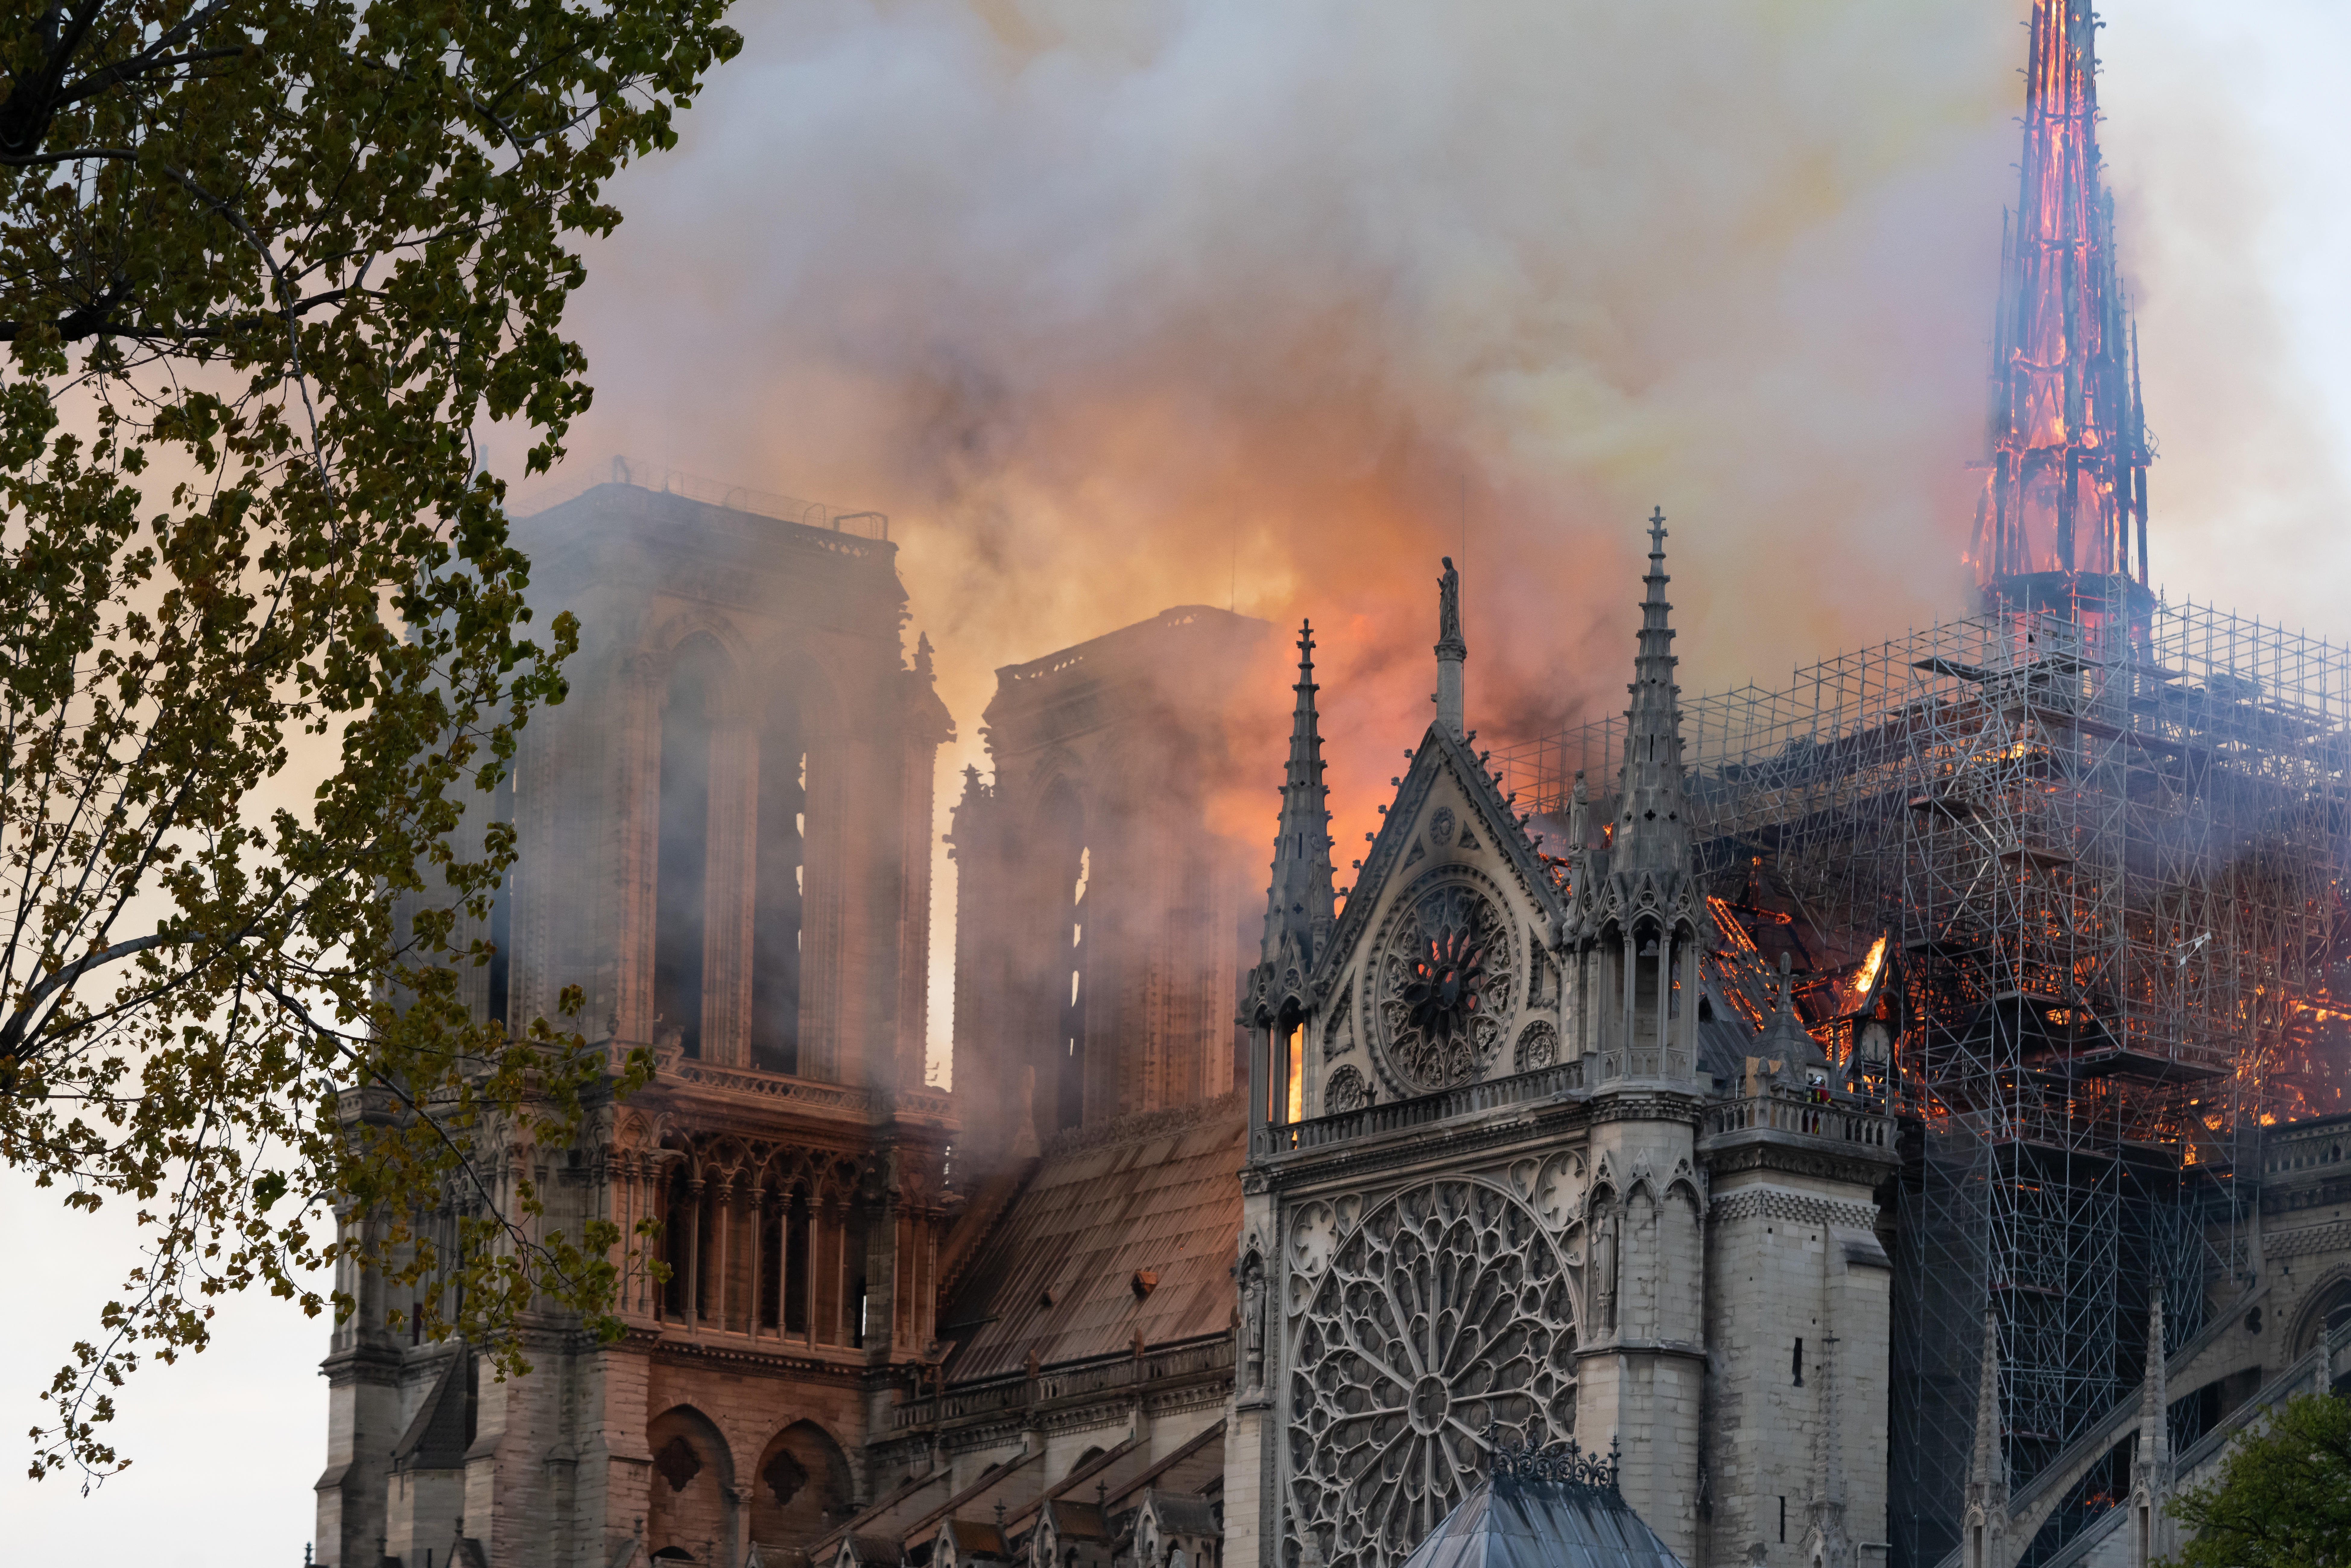 Cathedral Notre Dame De Paris In Fire 